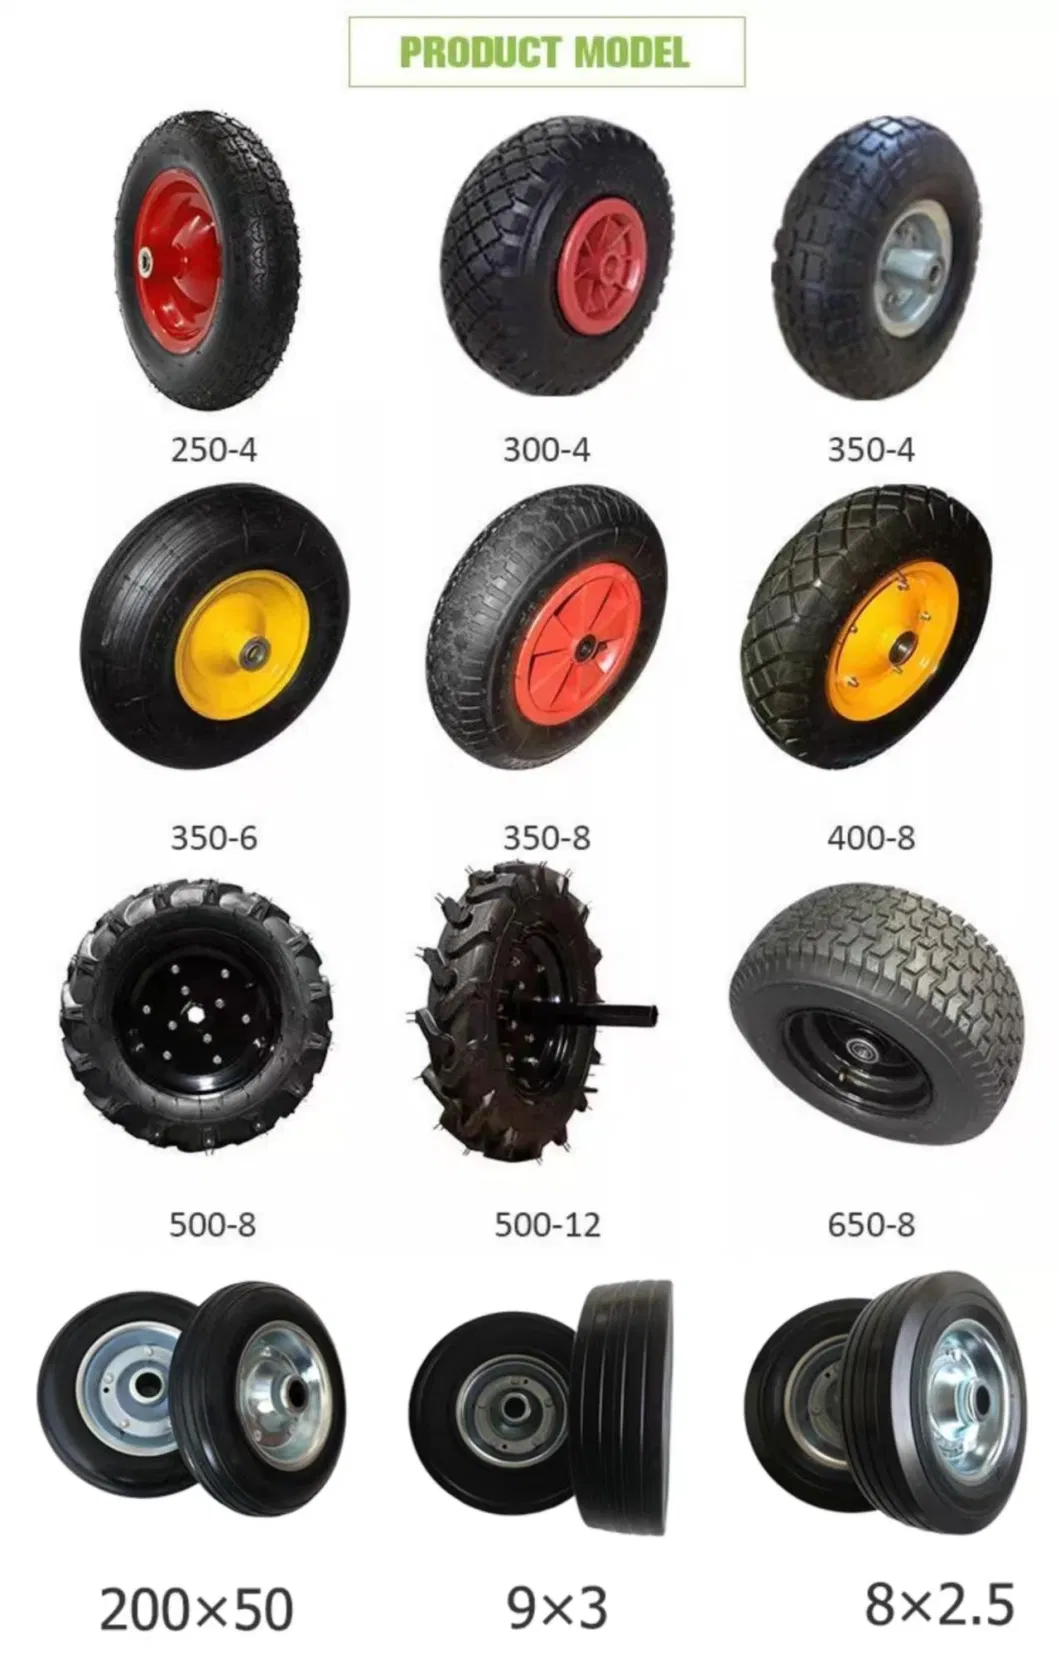 Most Popular 14 Inch Air or Solid or PU Foam Wheel 3.50-8 for Wheelbarrow